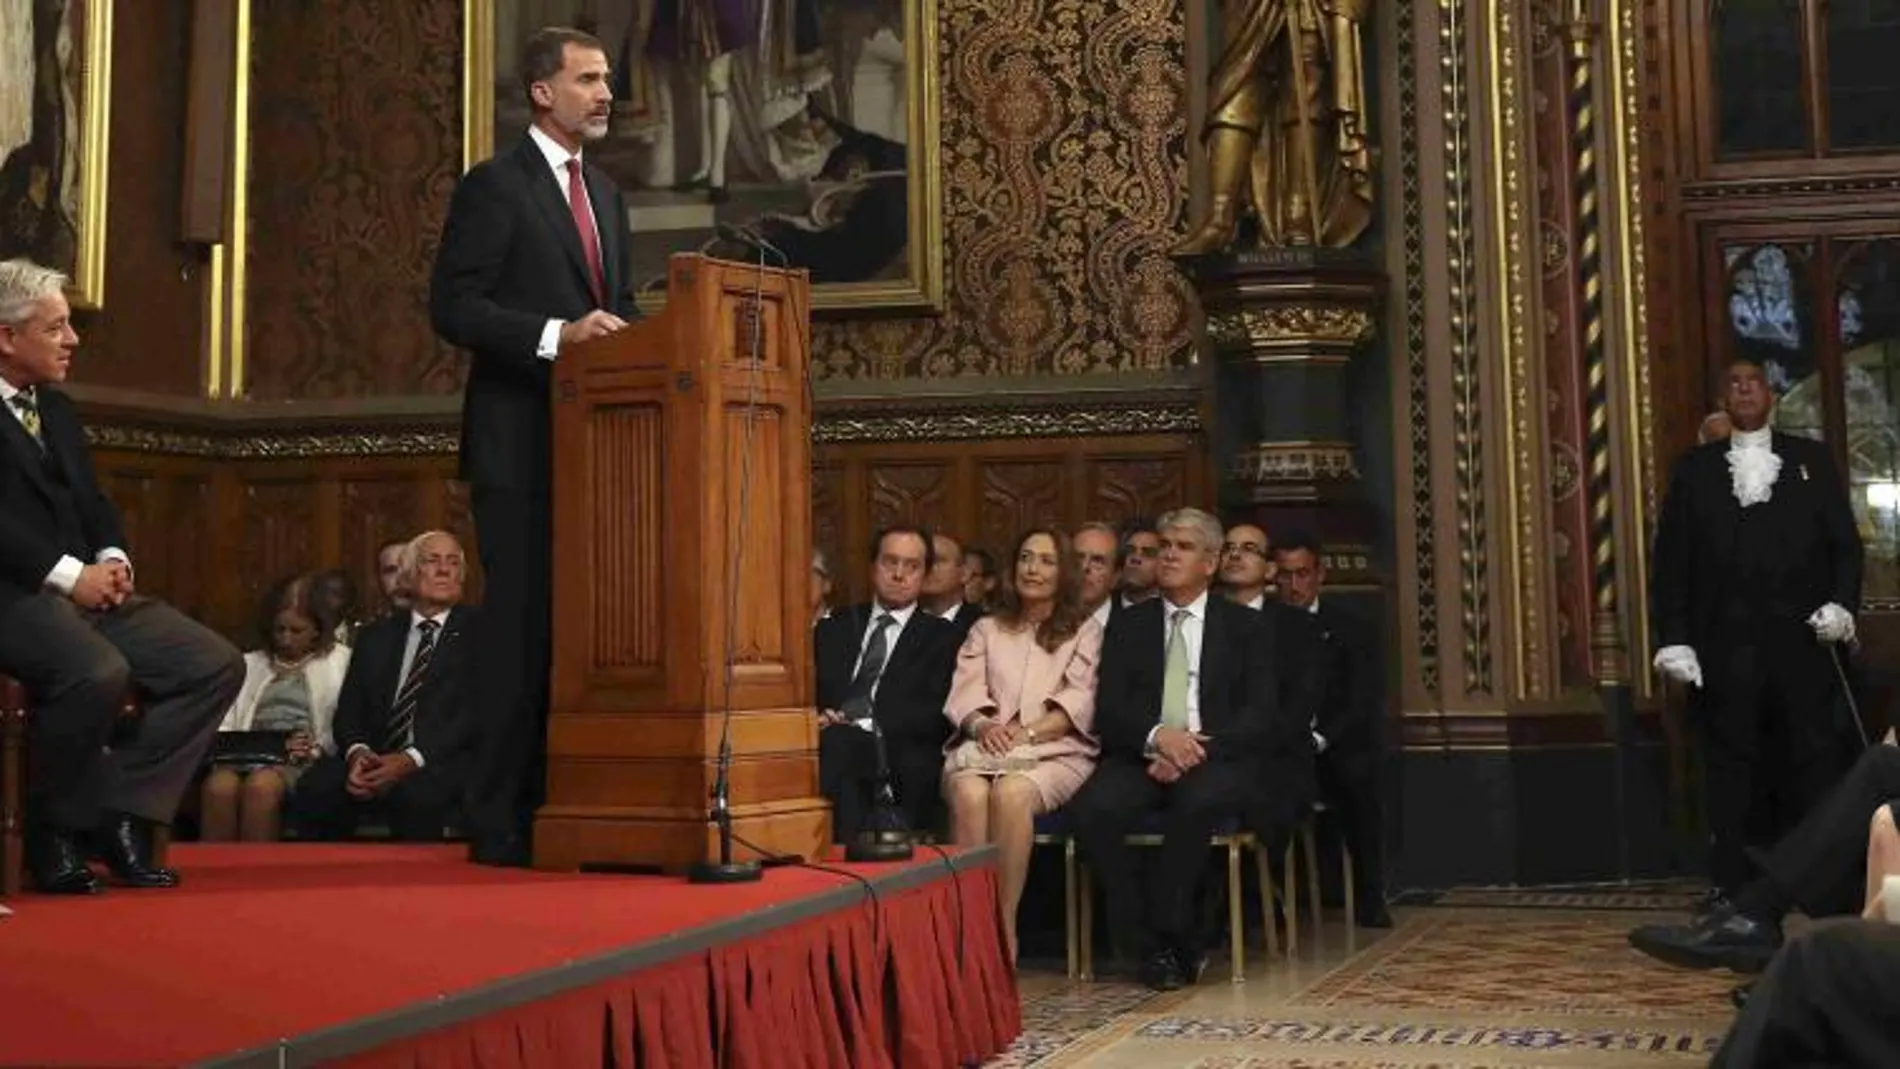 El Rey Felipe VI durante su intervención ante la sesión conjunta extraordinaria de las dos Cámaras del Parlamento británico celebrada en la Royal Gallery del Palacio de Westminster